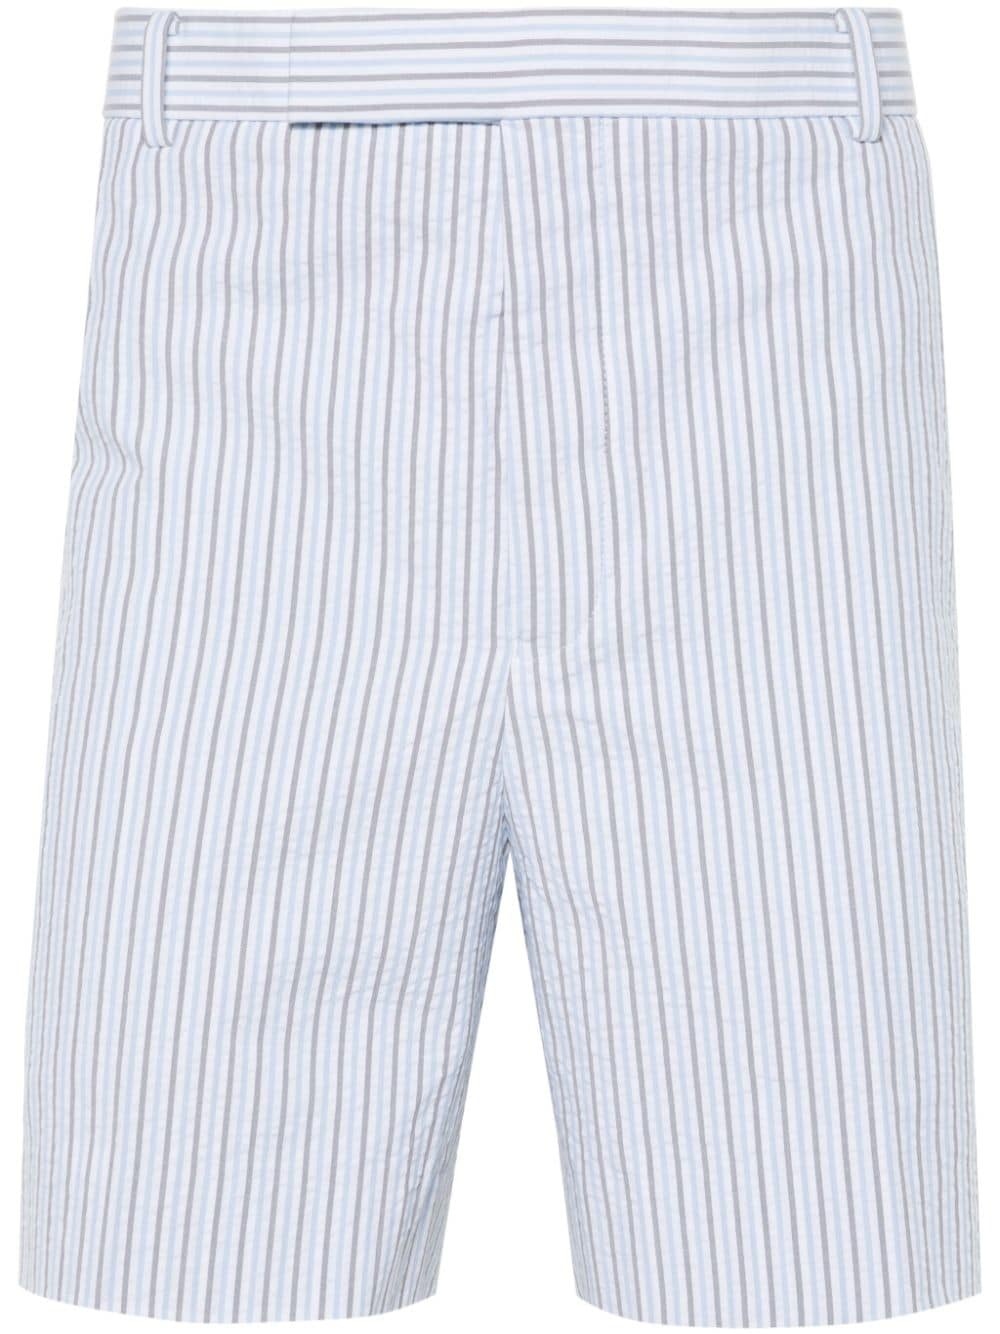 striped seersucker cotton shorts - 1